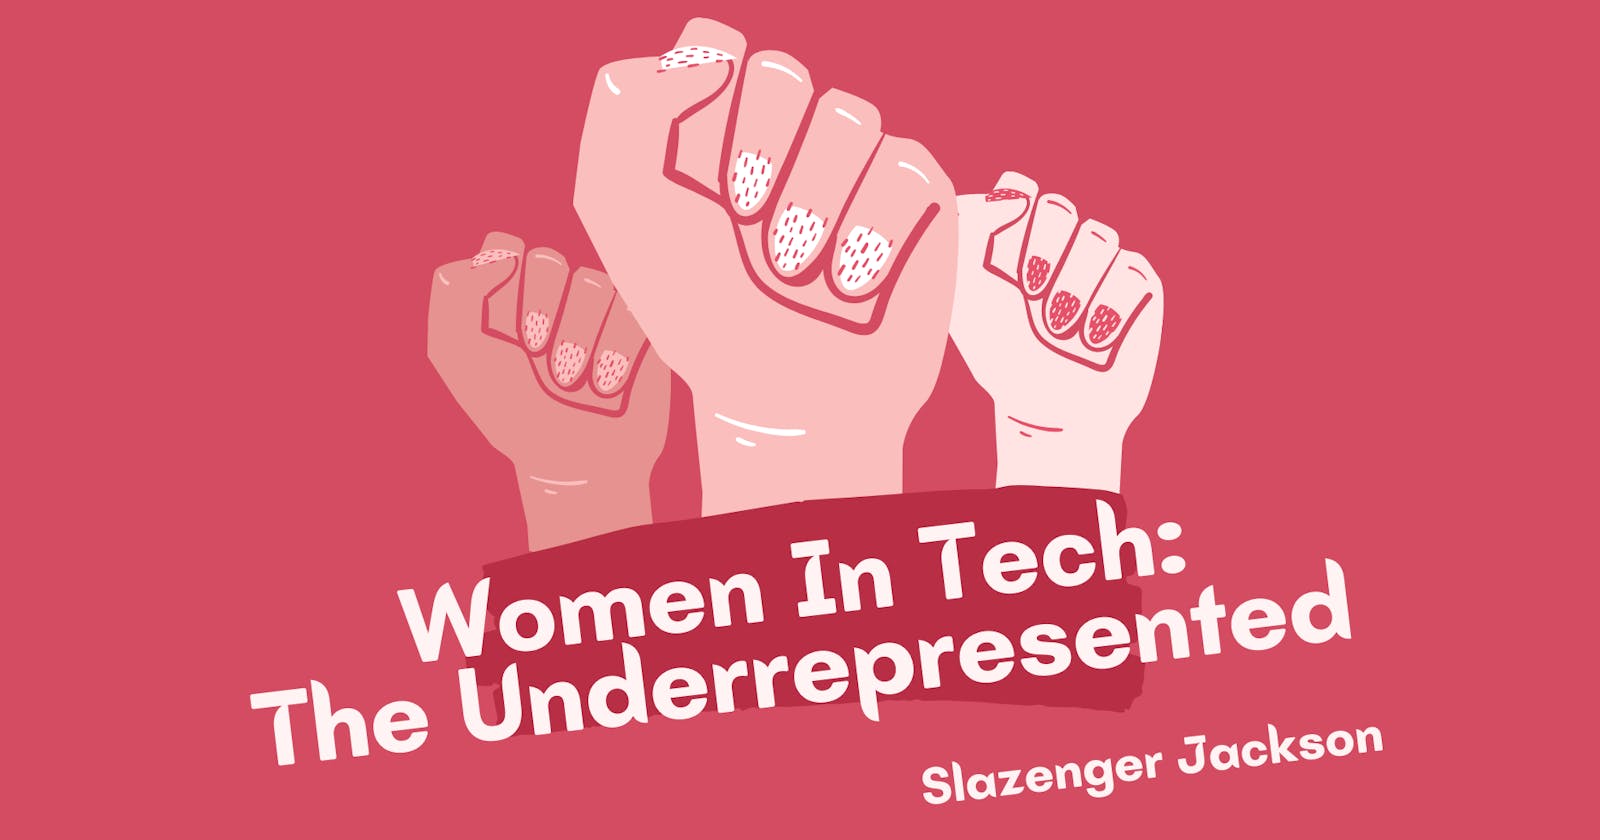 Women in Tech: The Underrepresented